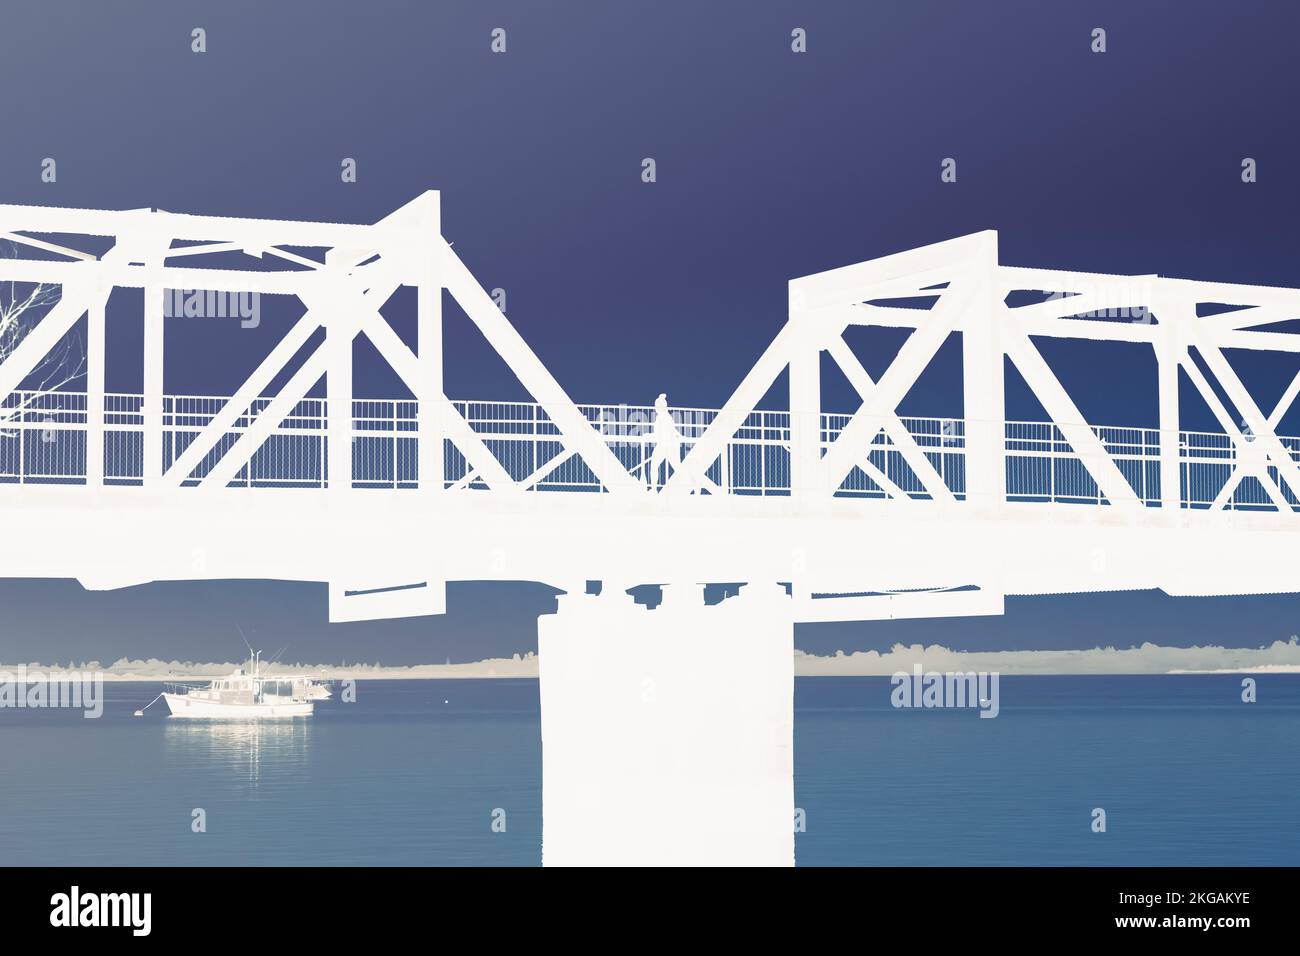 Tauranga mattina immagine effetto inverso o negativo del ponte ferroviario attraverso il porto di Tauranga in bianco su blu. Foto Stock